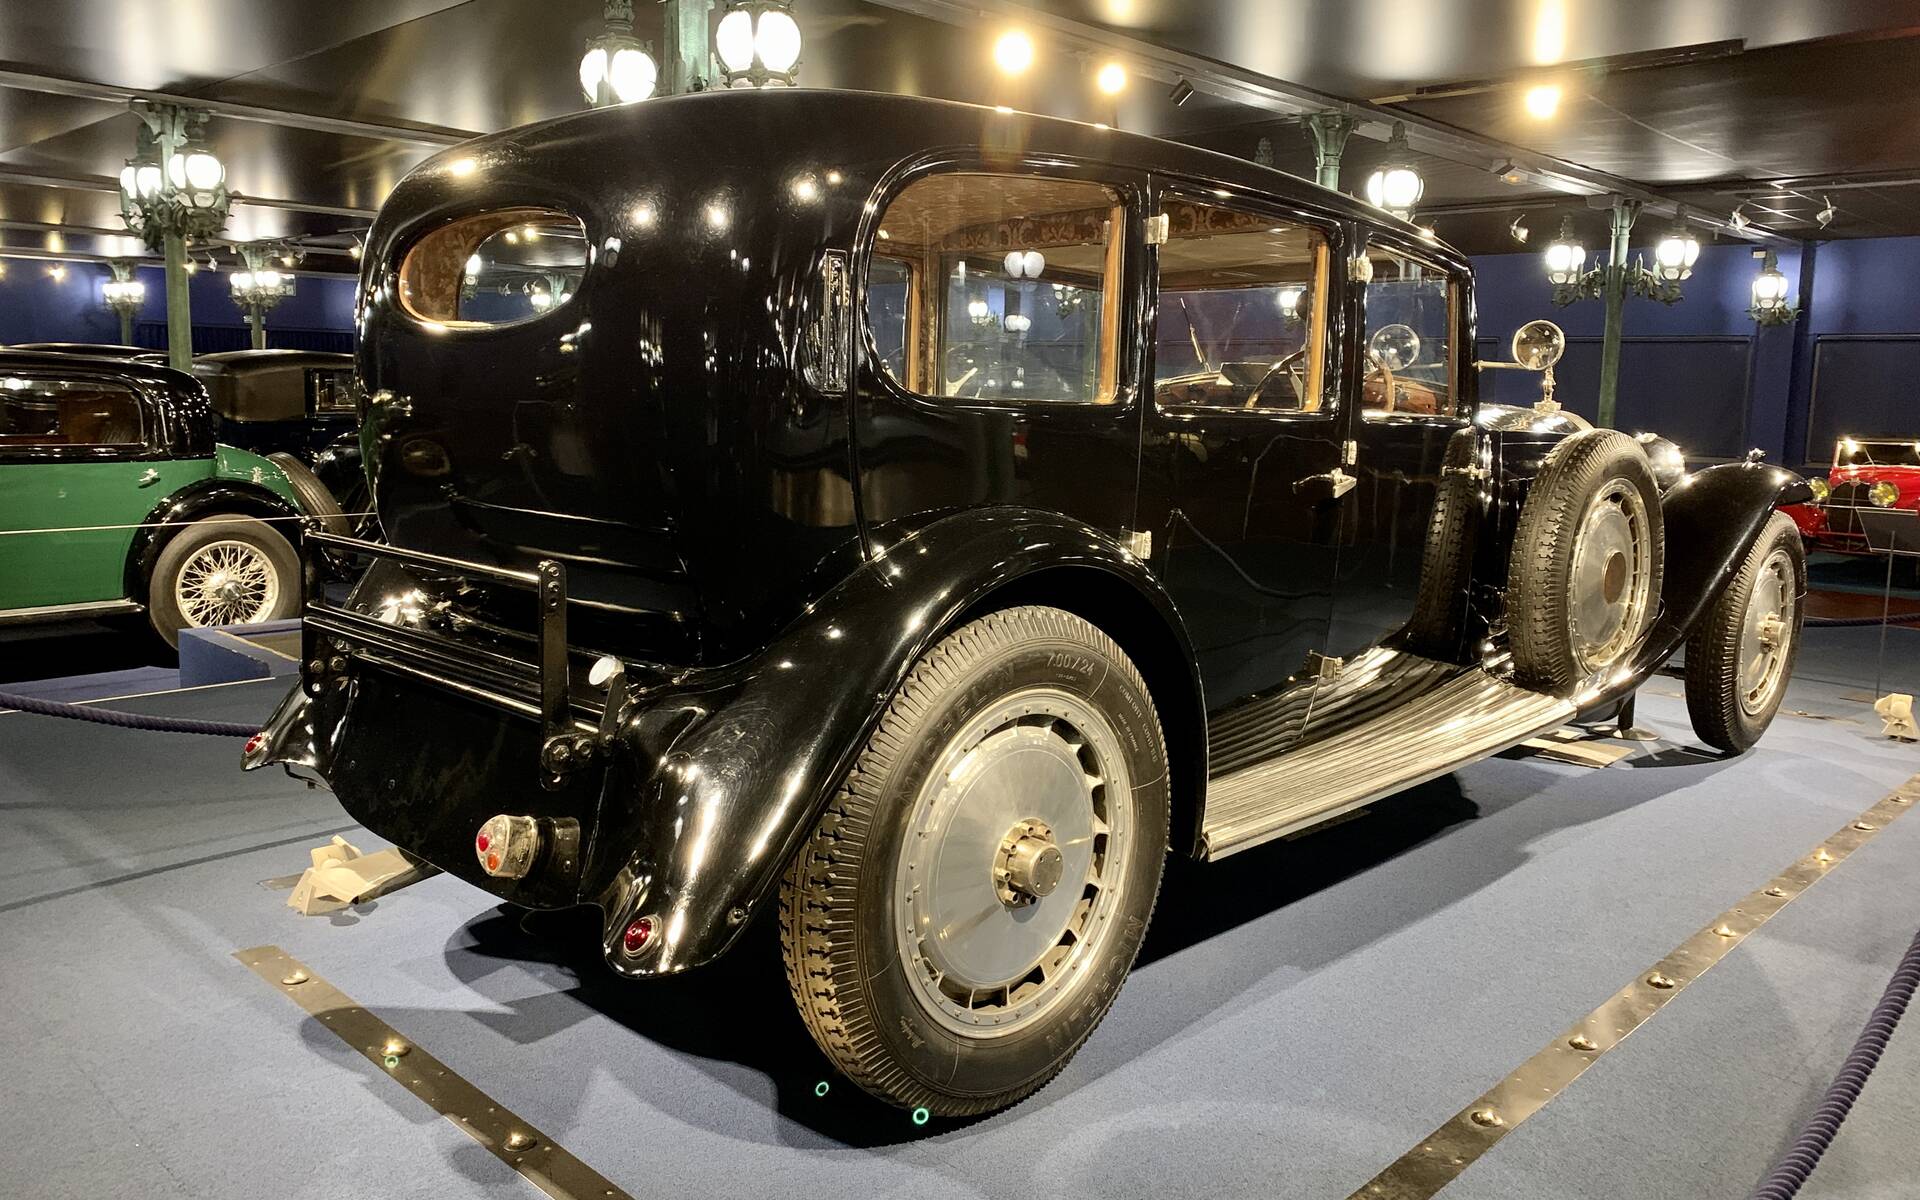 En photos : une centaine de Bugatti réunies dans un même musée 503103-en-photos-des-dizaines-de-bugatti-reunies-dans-un-meme-musee